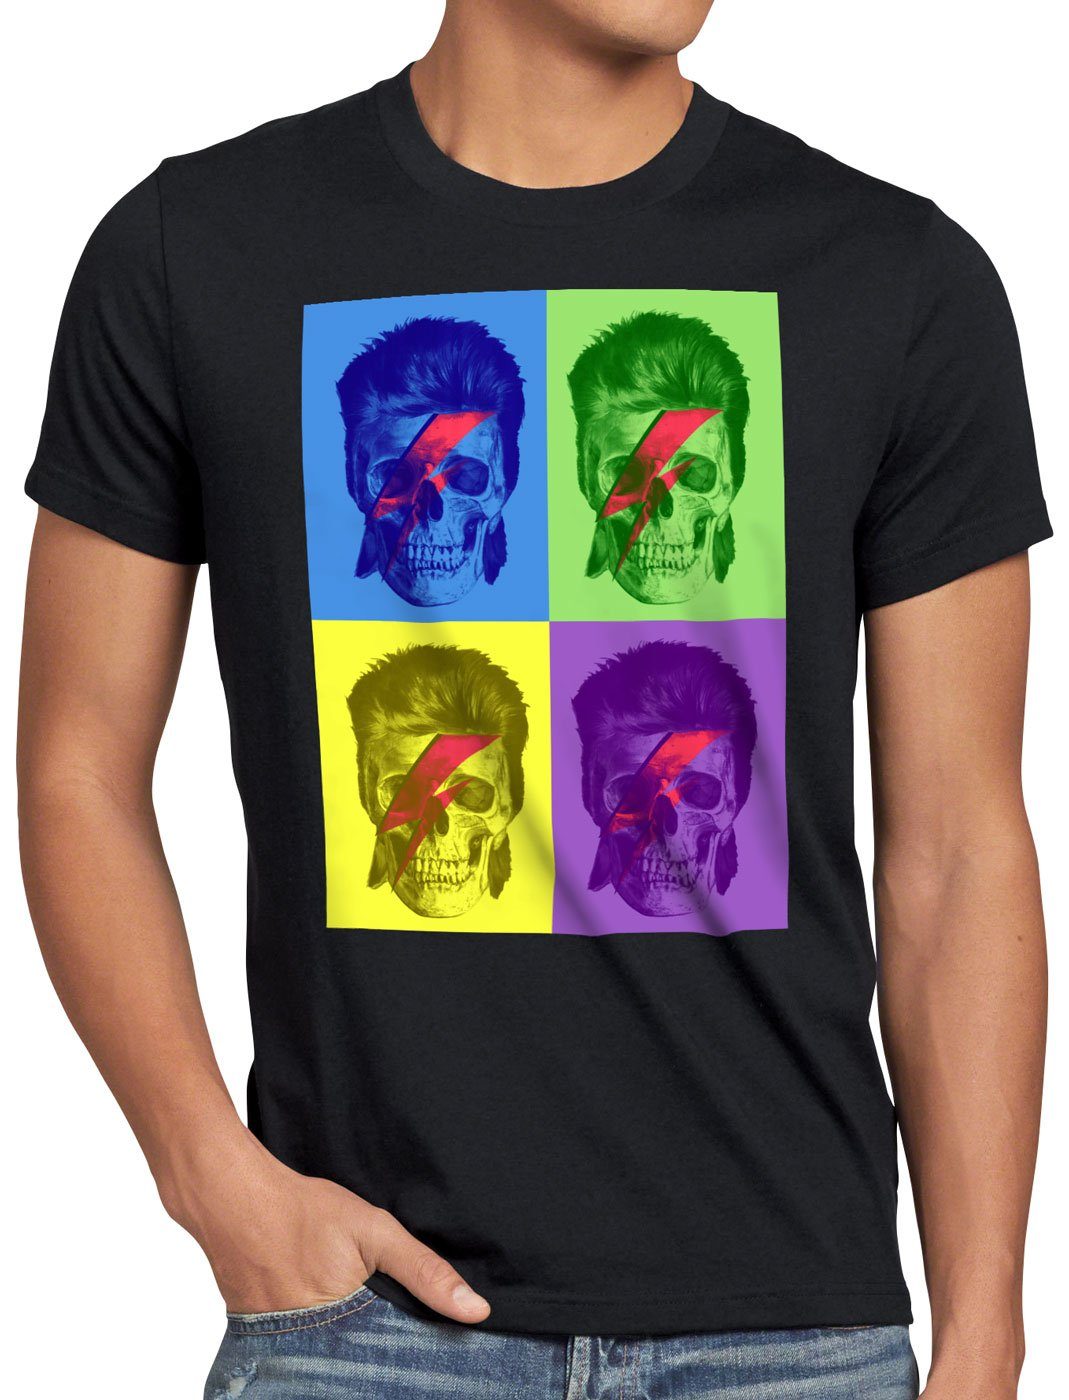 schwarz style3 Herren T-Shirt Print-Shirt retro pop-art warhol Skull Bowie turntable